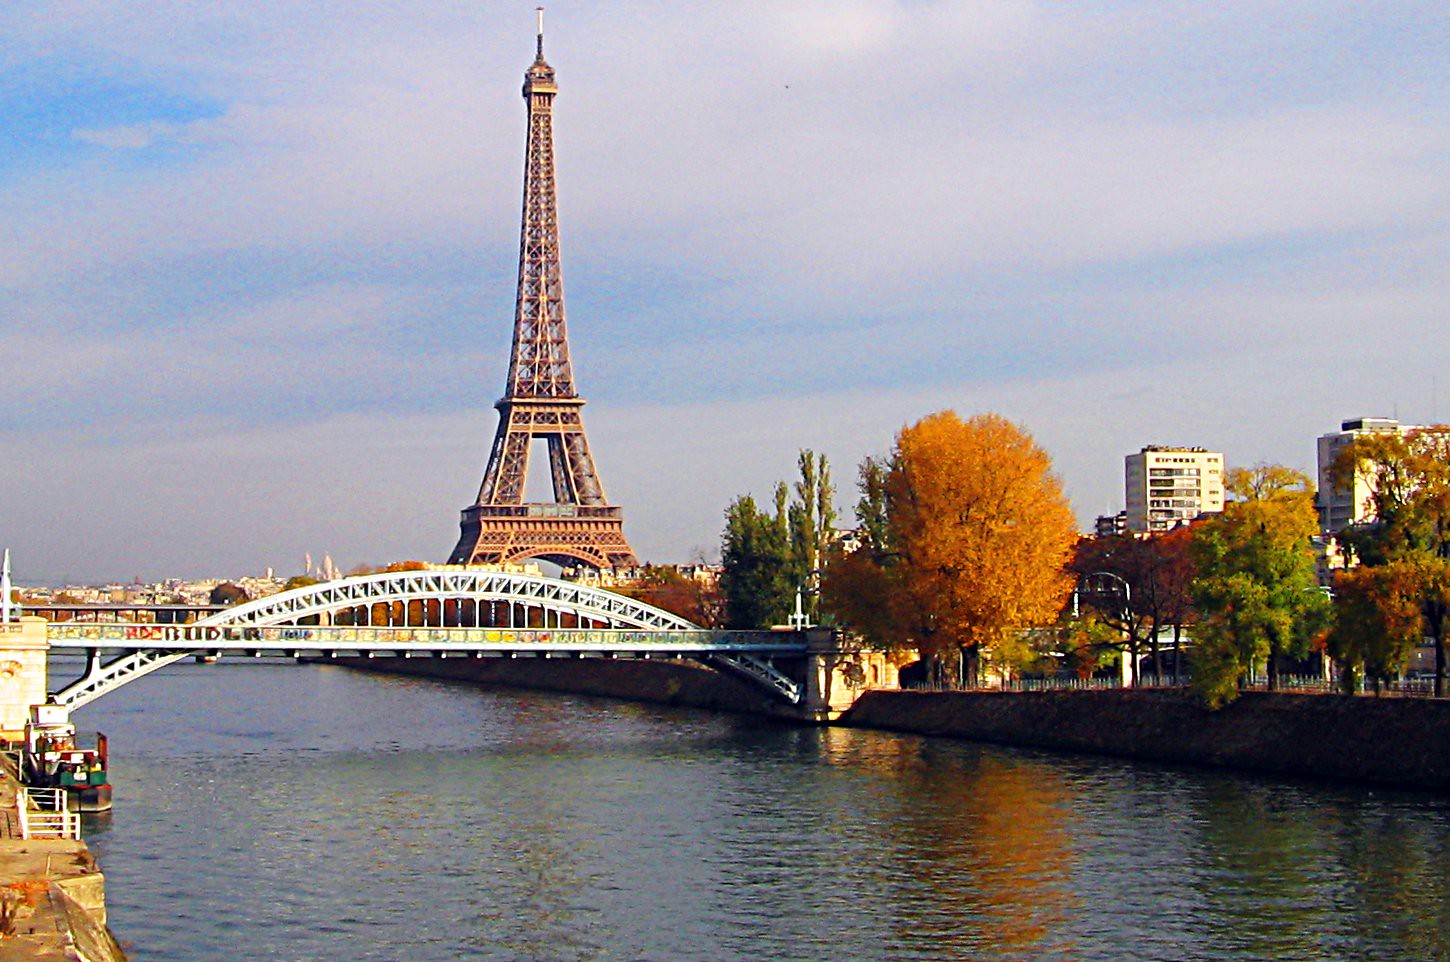 Речка сена. Эйфелева башня река сена. Париж. Эйфелева башня, река сена. Река сена в Париже. Река сена во Франции.